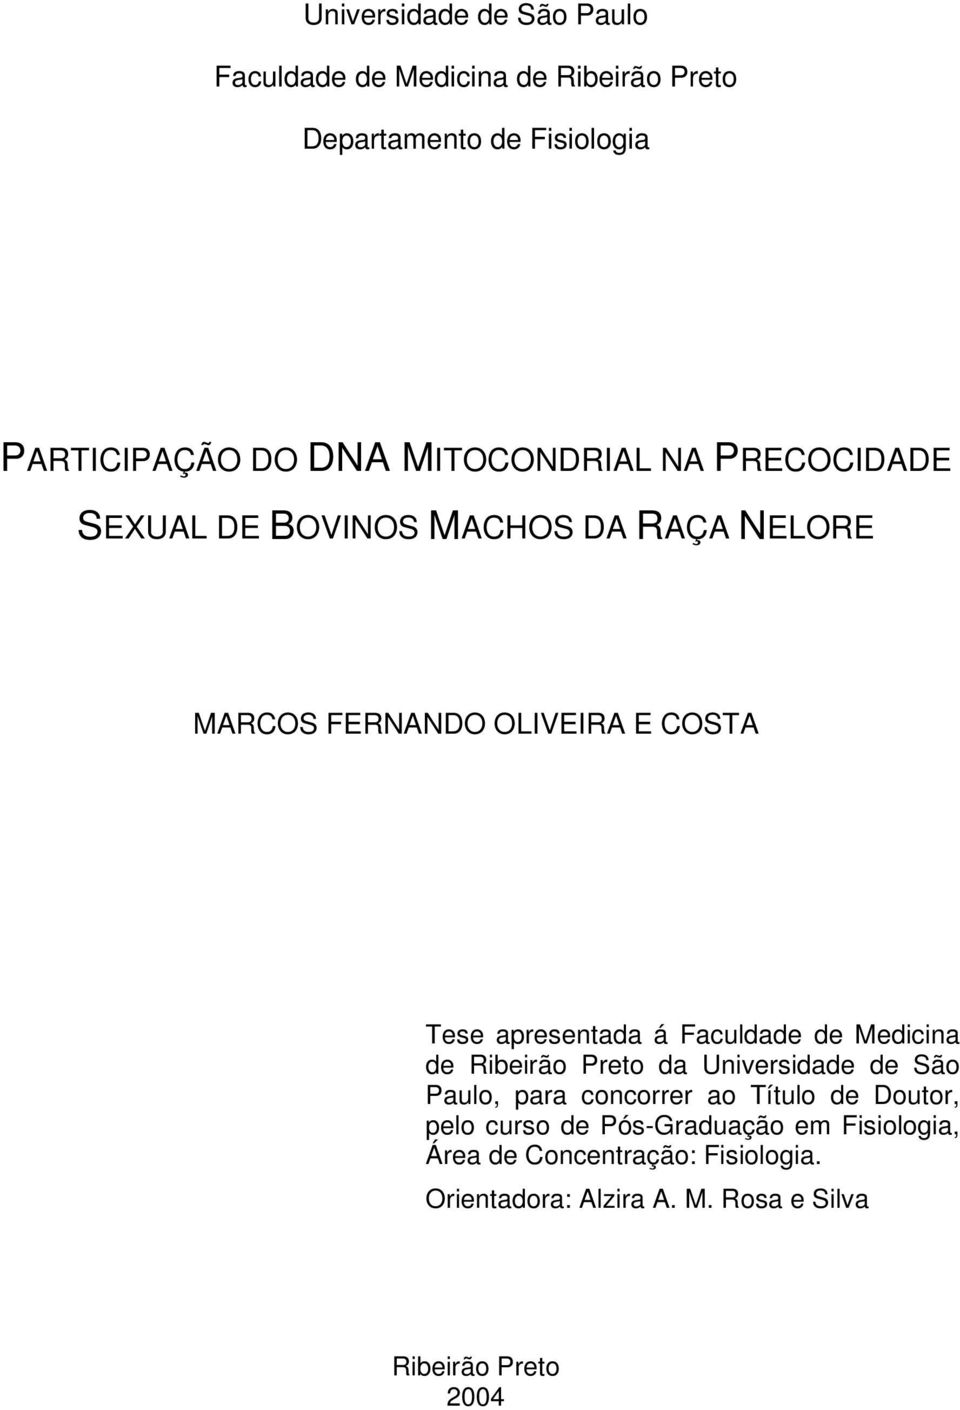 á Faculdade de Medicina de Ribeirão Preto da Universidade de São Paulo, para concorrer ao Título de Doutor, pelo curso